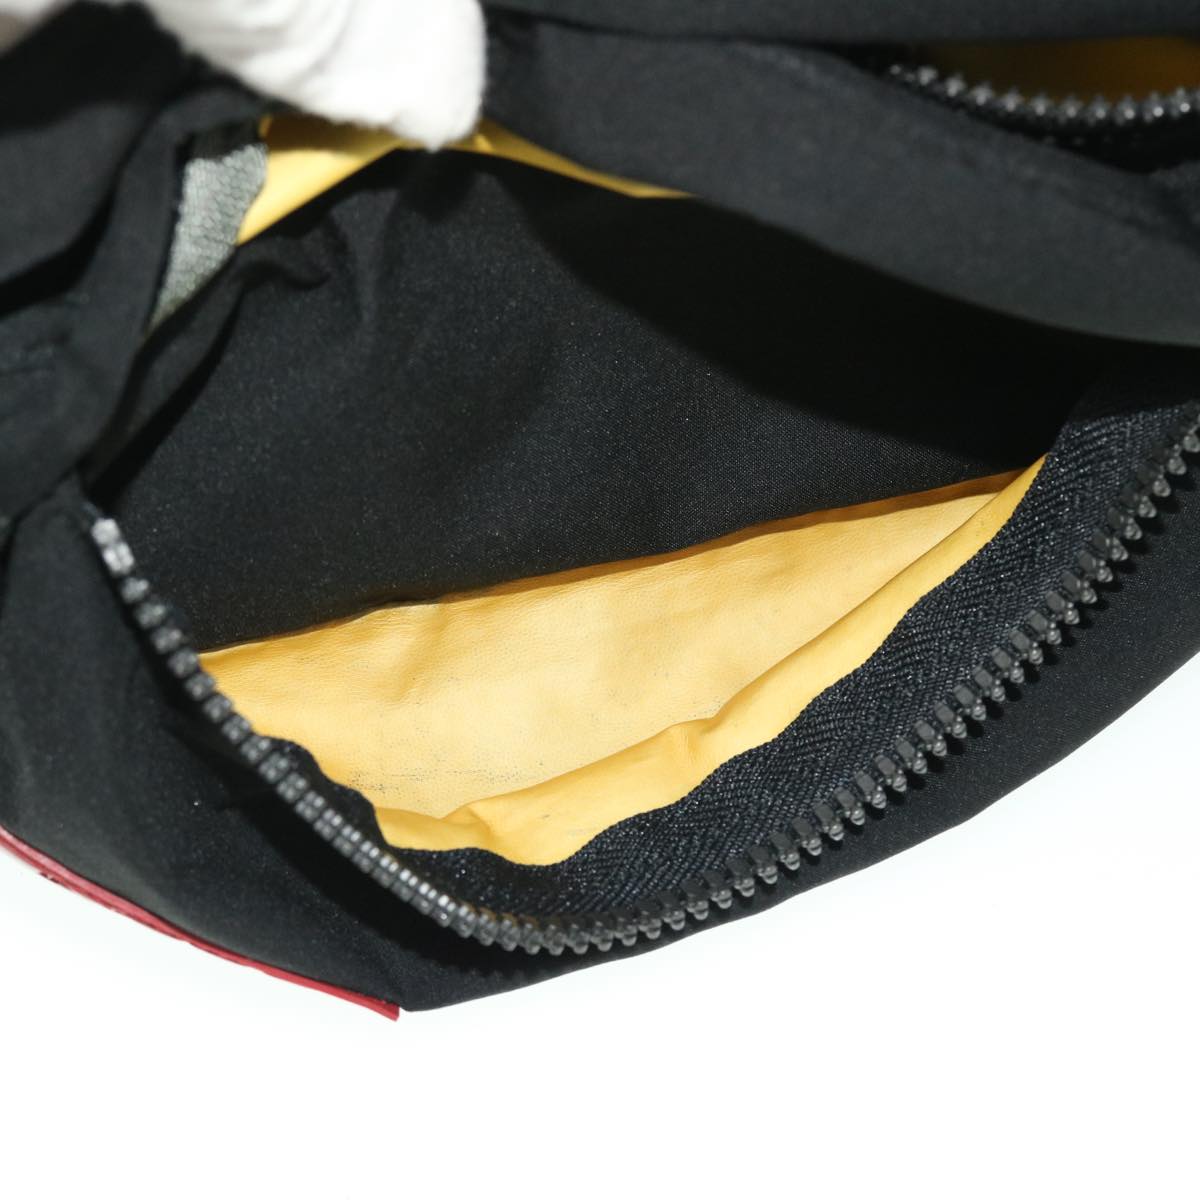 PRADA Sports Waist Bag Nylon Black Red Auth ki3352